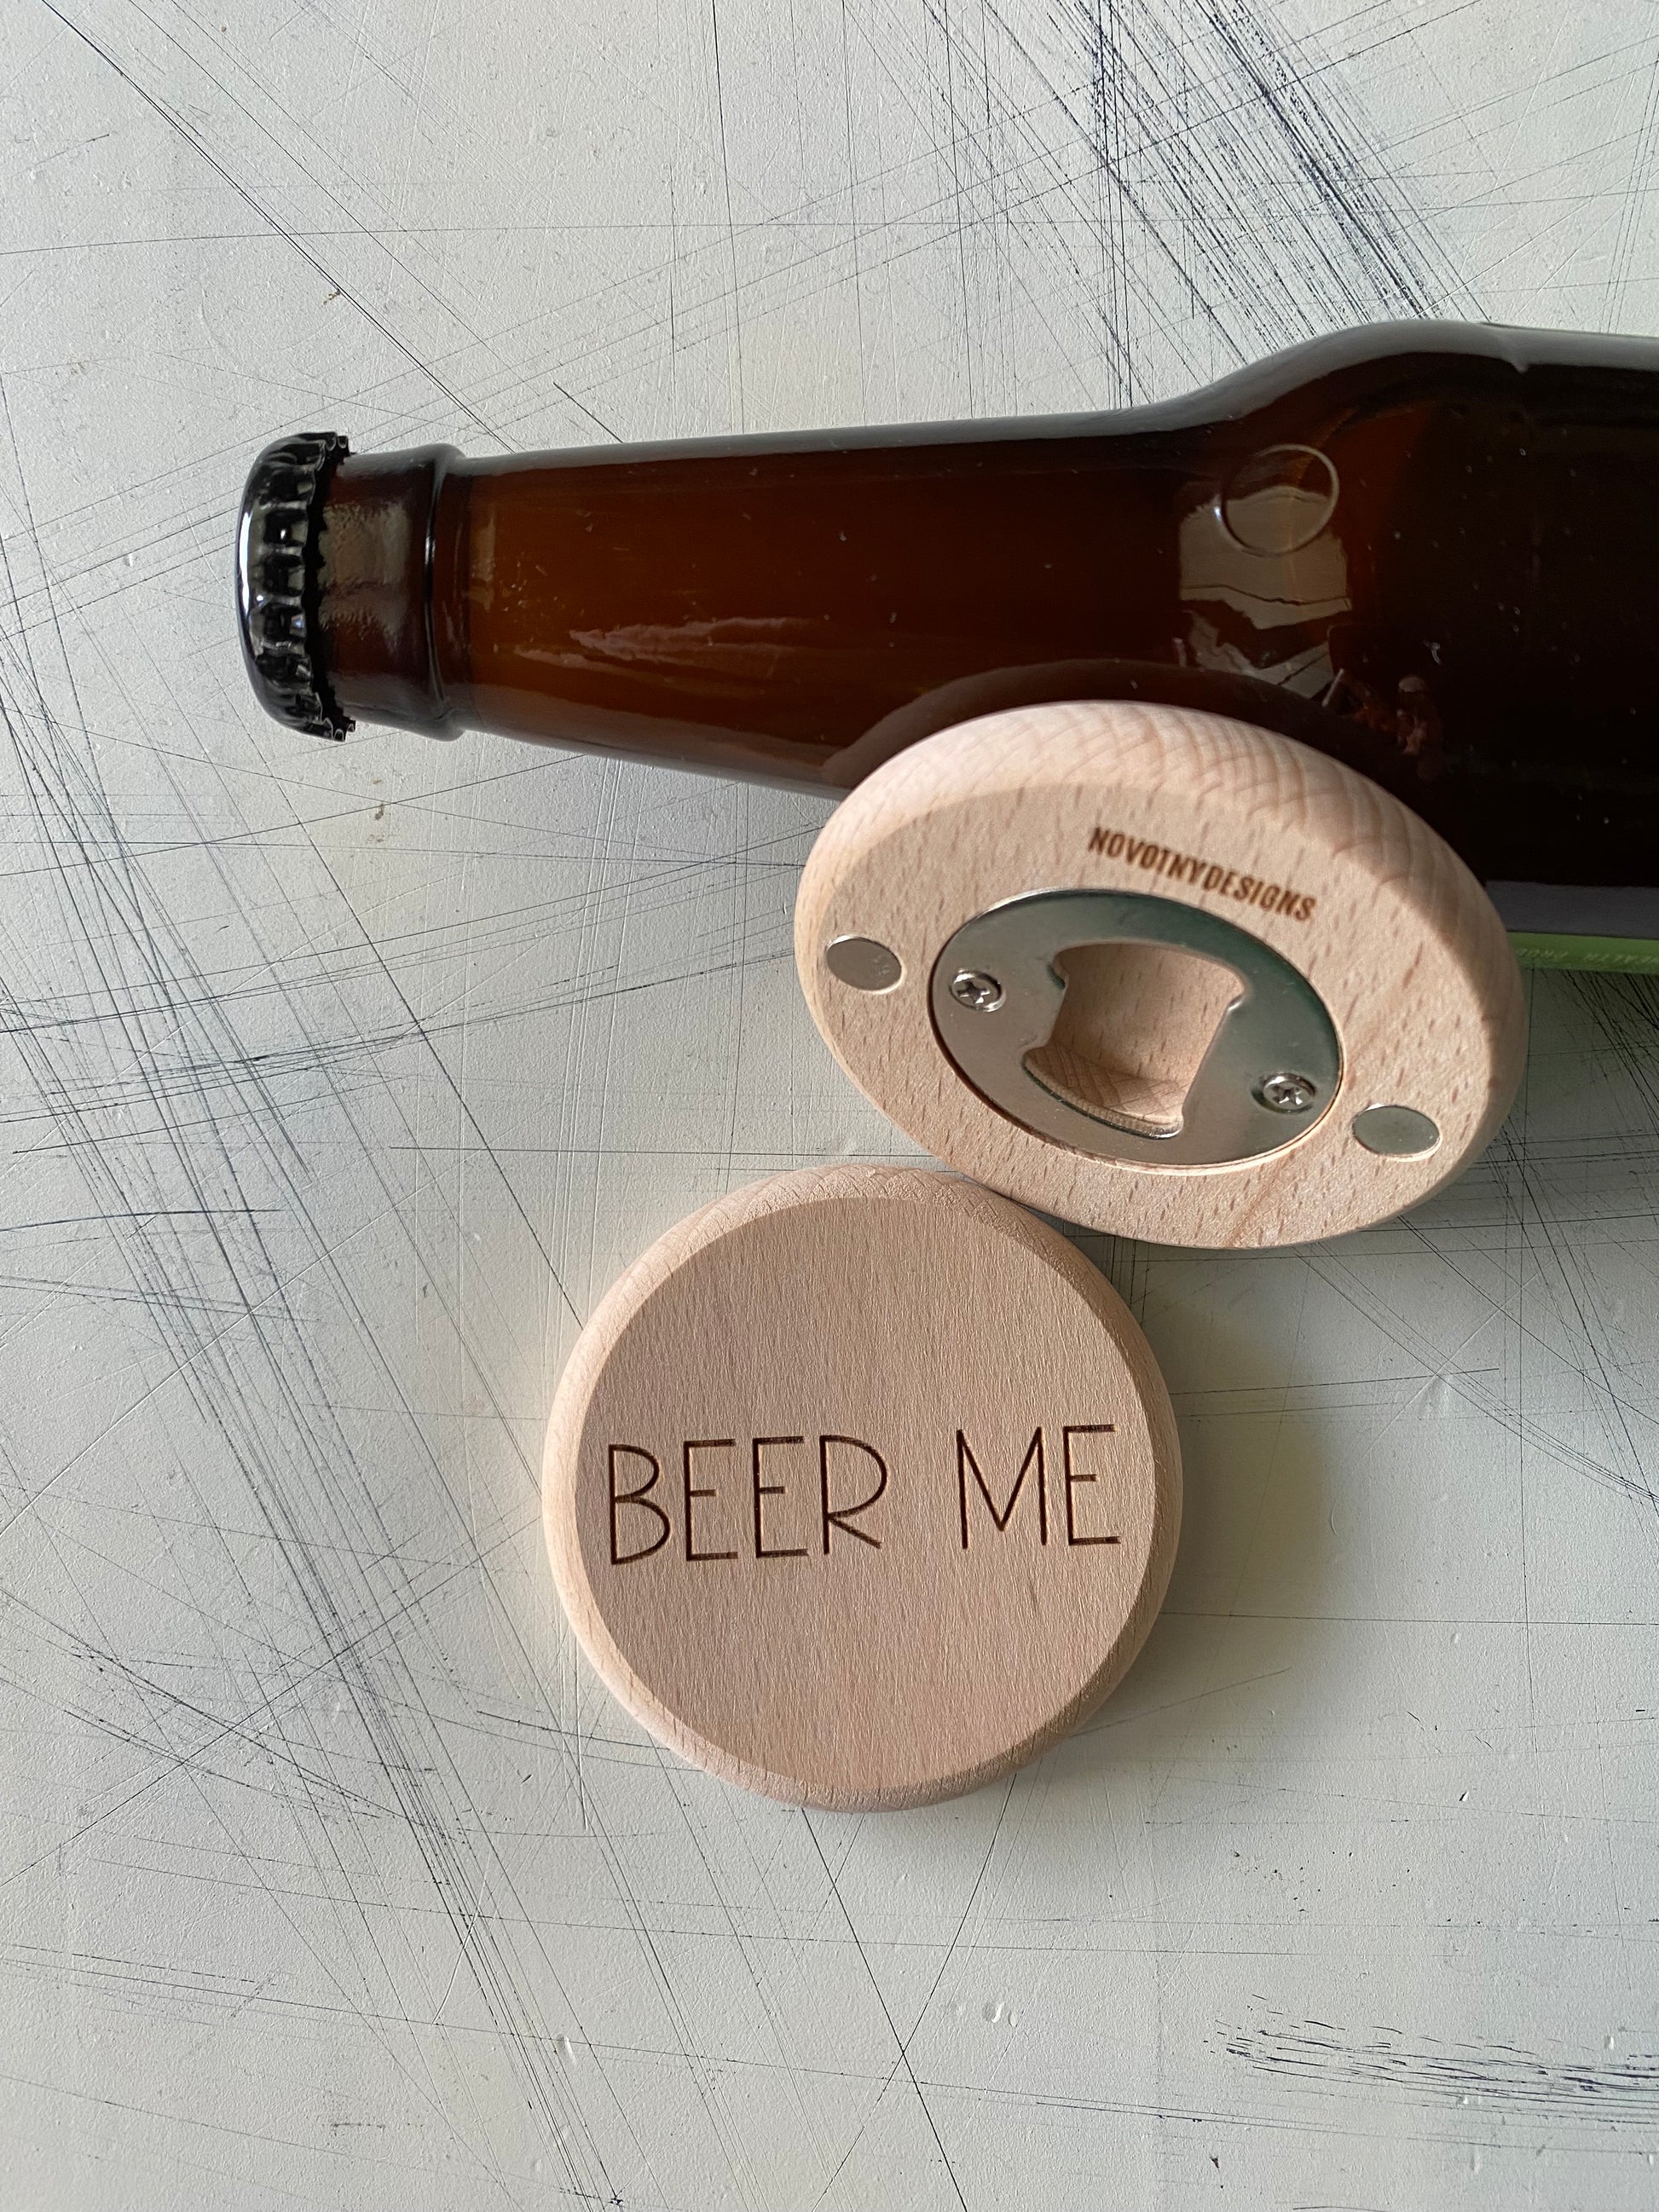 Beer Me - Novotny Designs - engraved wood magnetic bottle opener